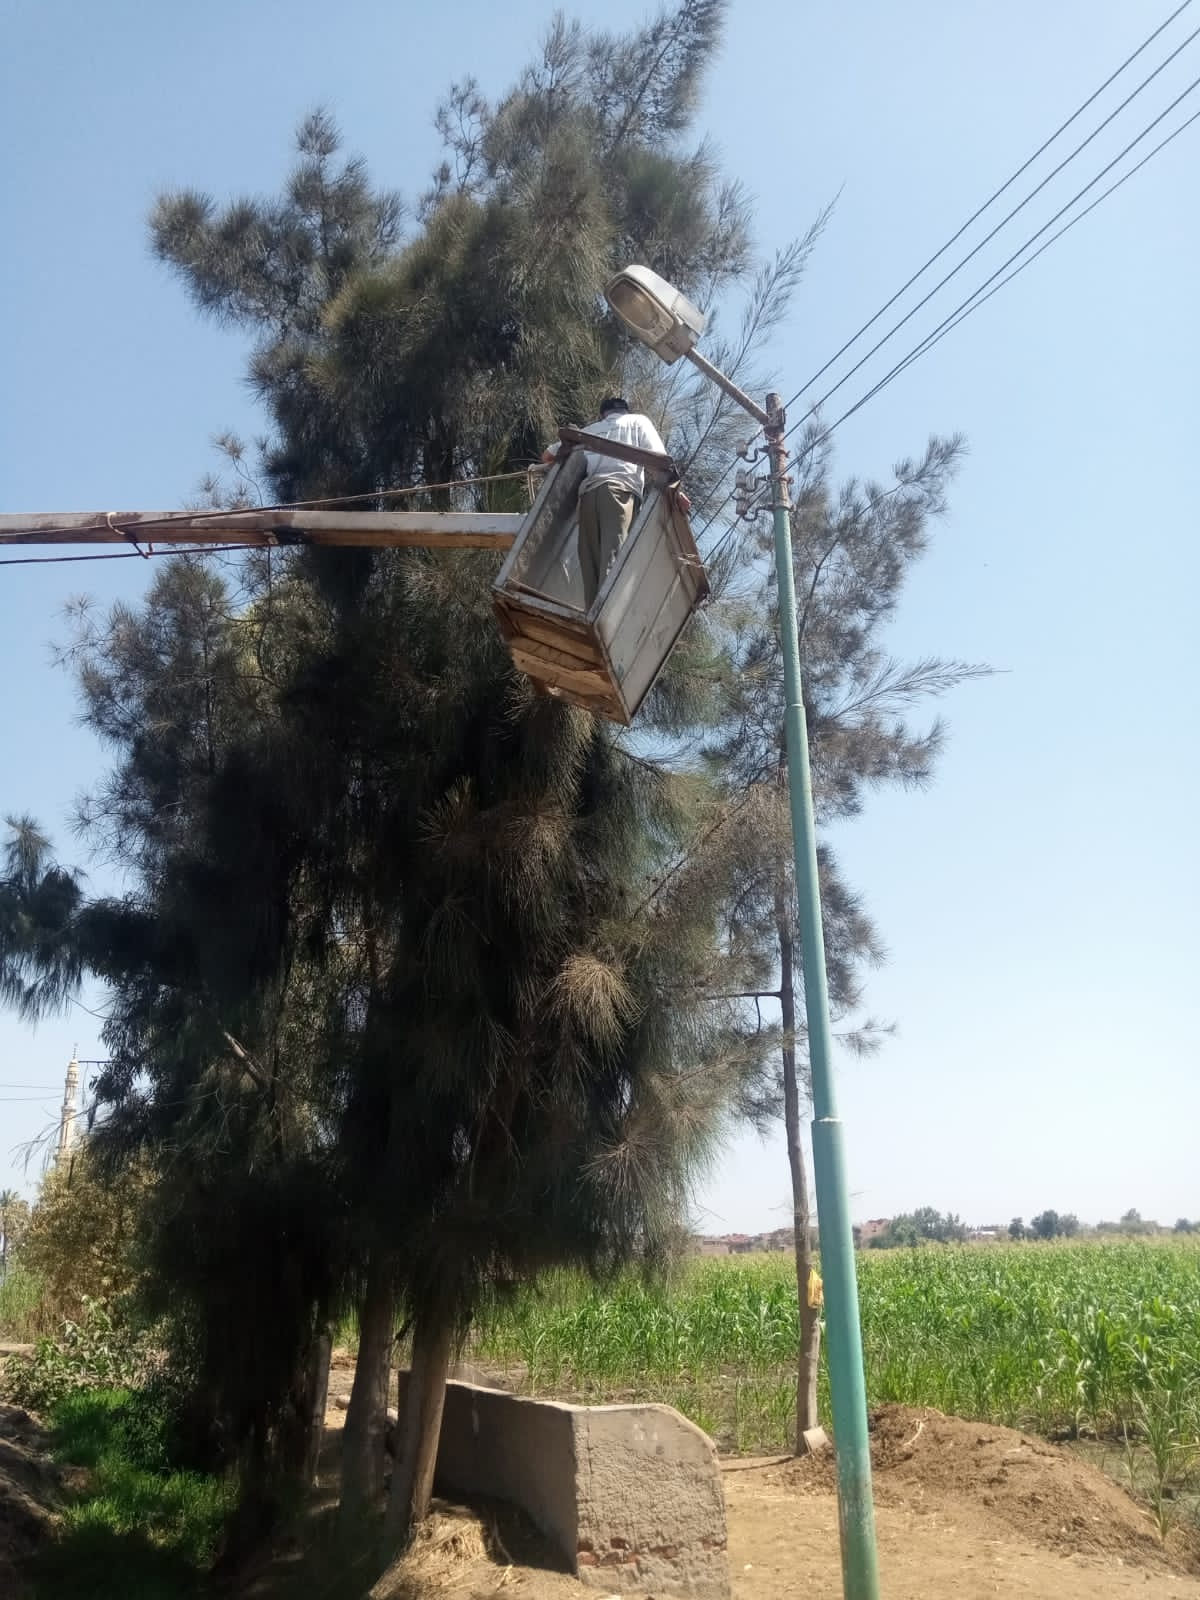 ترشيد الكهرباء بالطرق والشوارع في محافظة الغربية